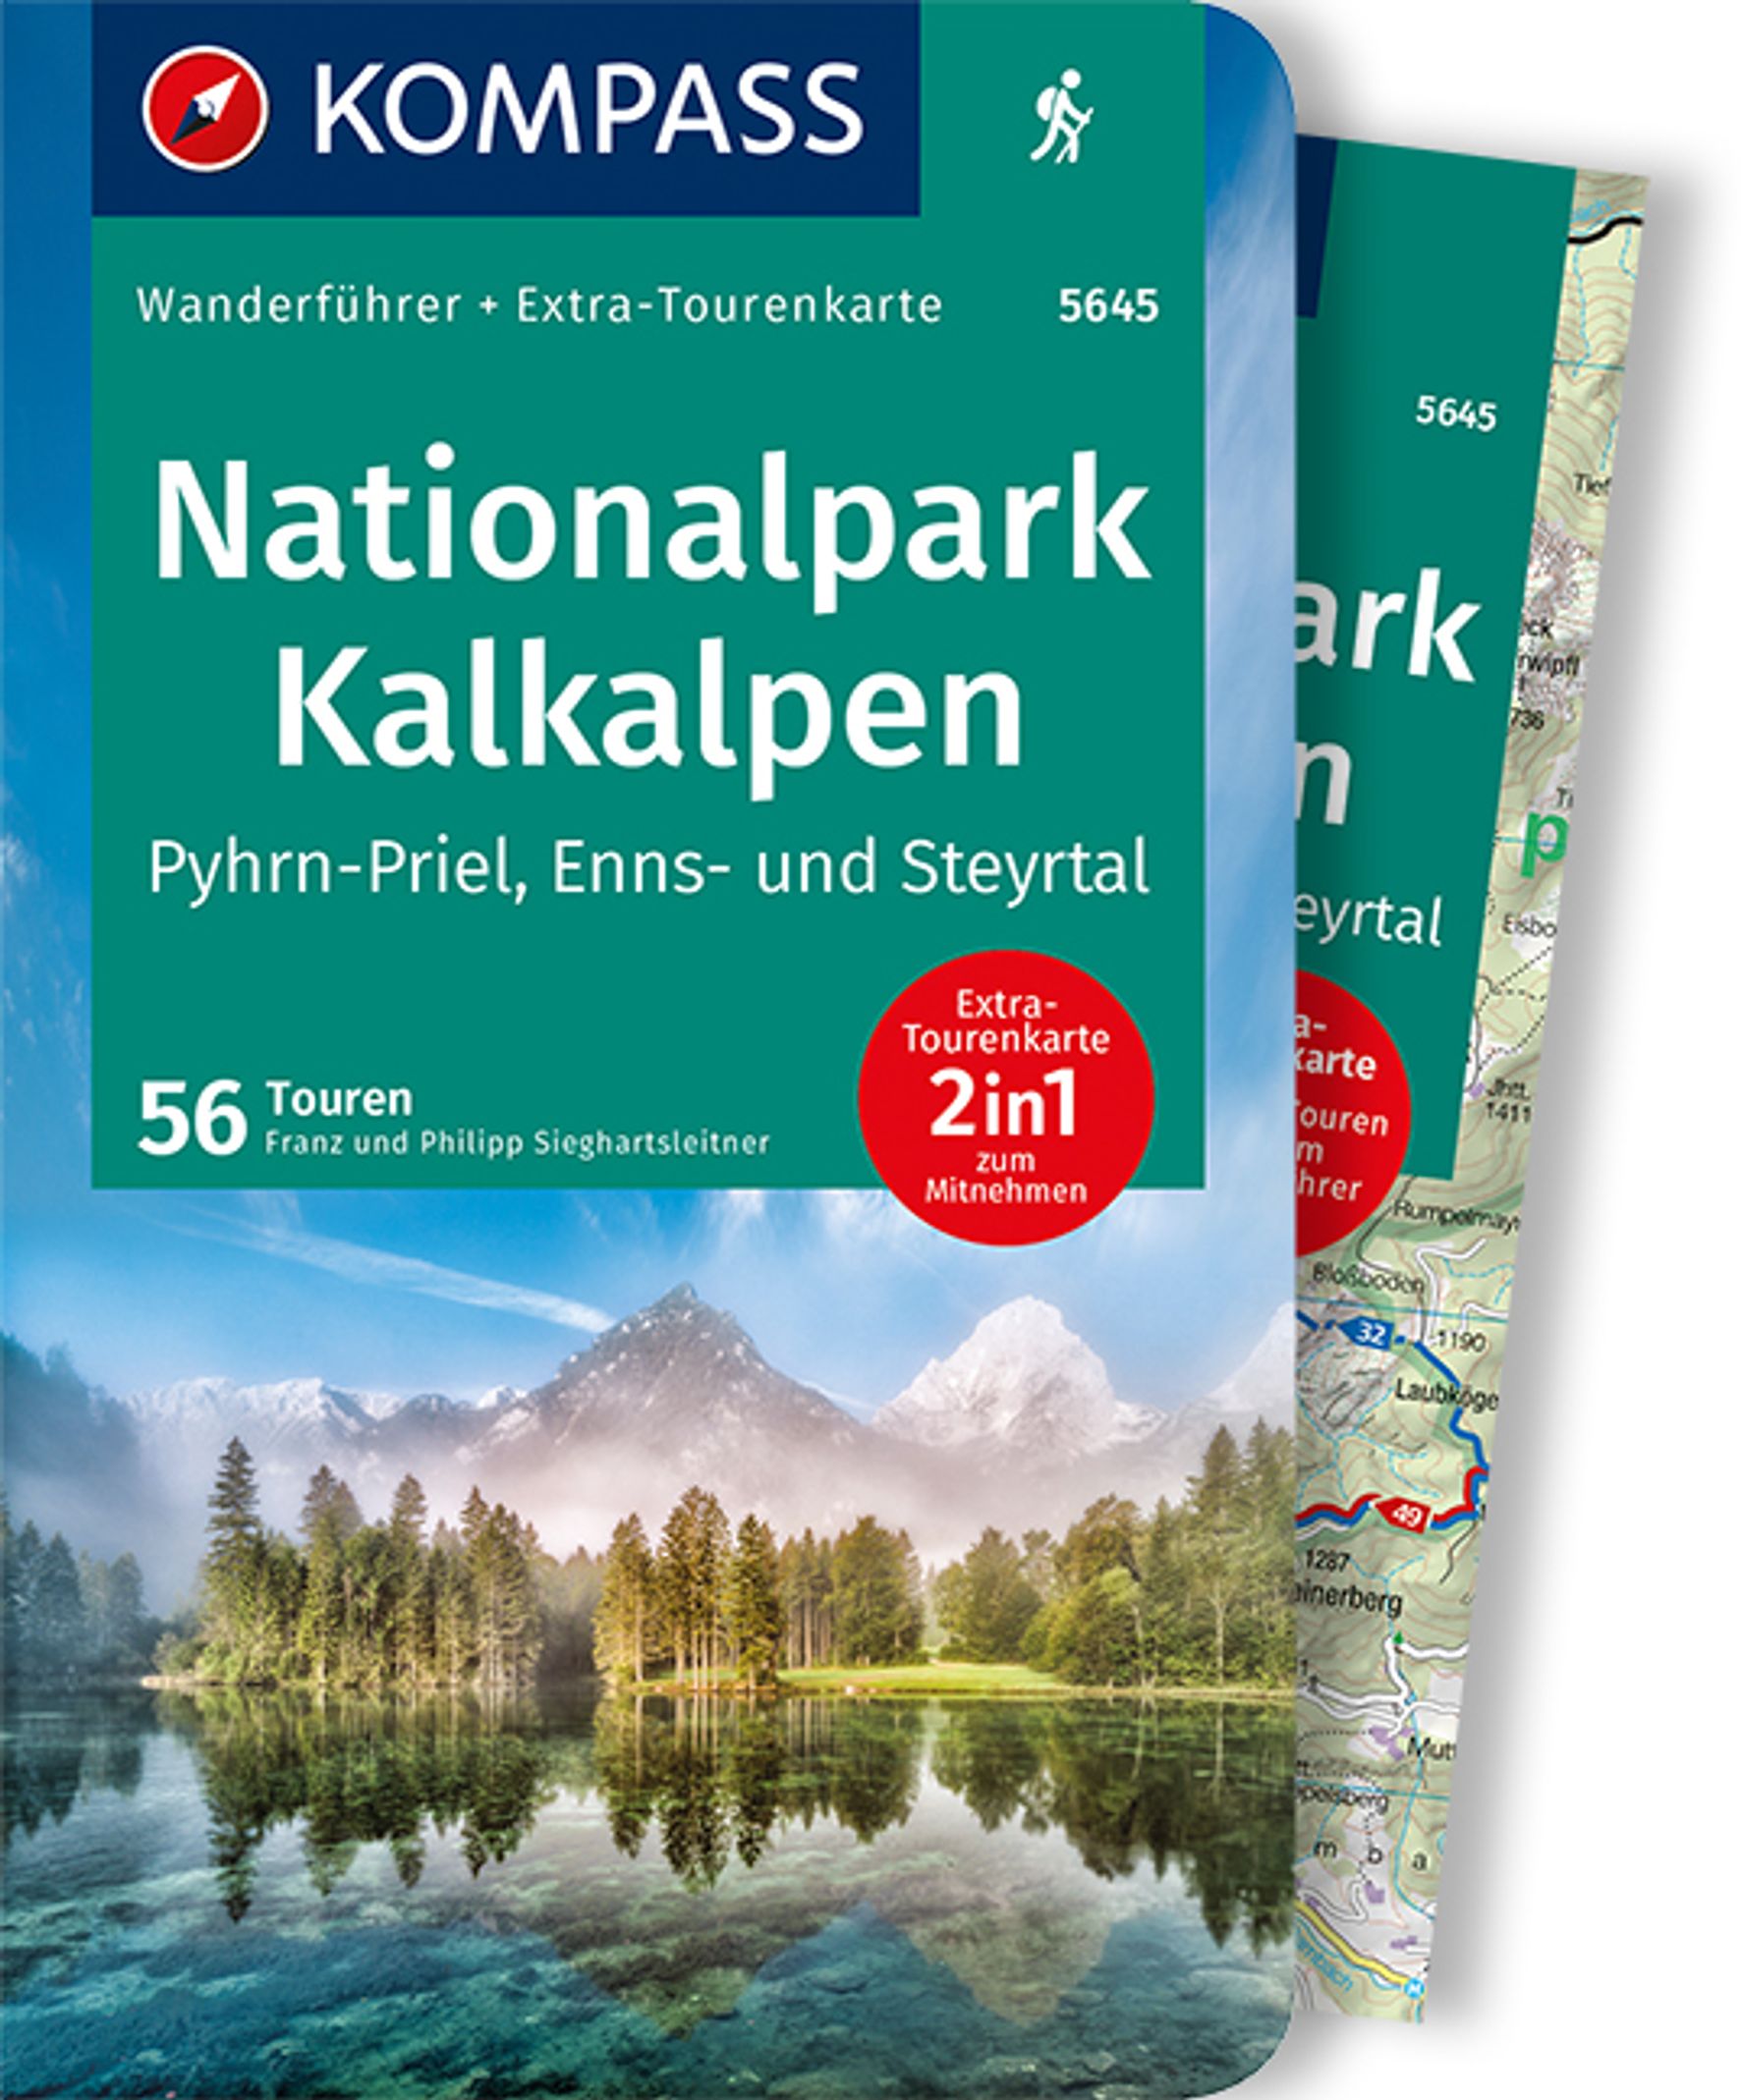 MAIRDUMONT Nationalpark Kalkalpen - Pyhrn-Priel, Enns- und Steyrtal, 55 Touren mit Extra-Tourenkarte